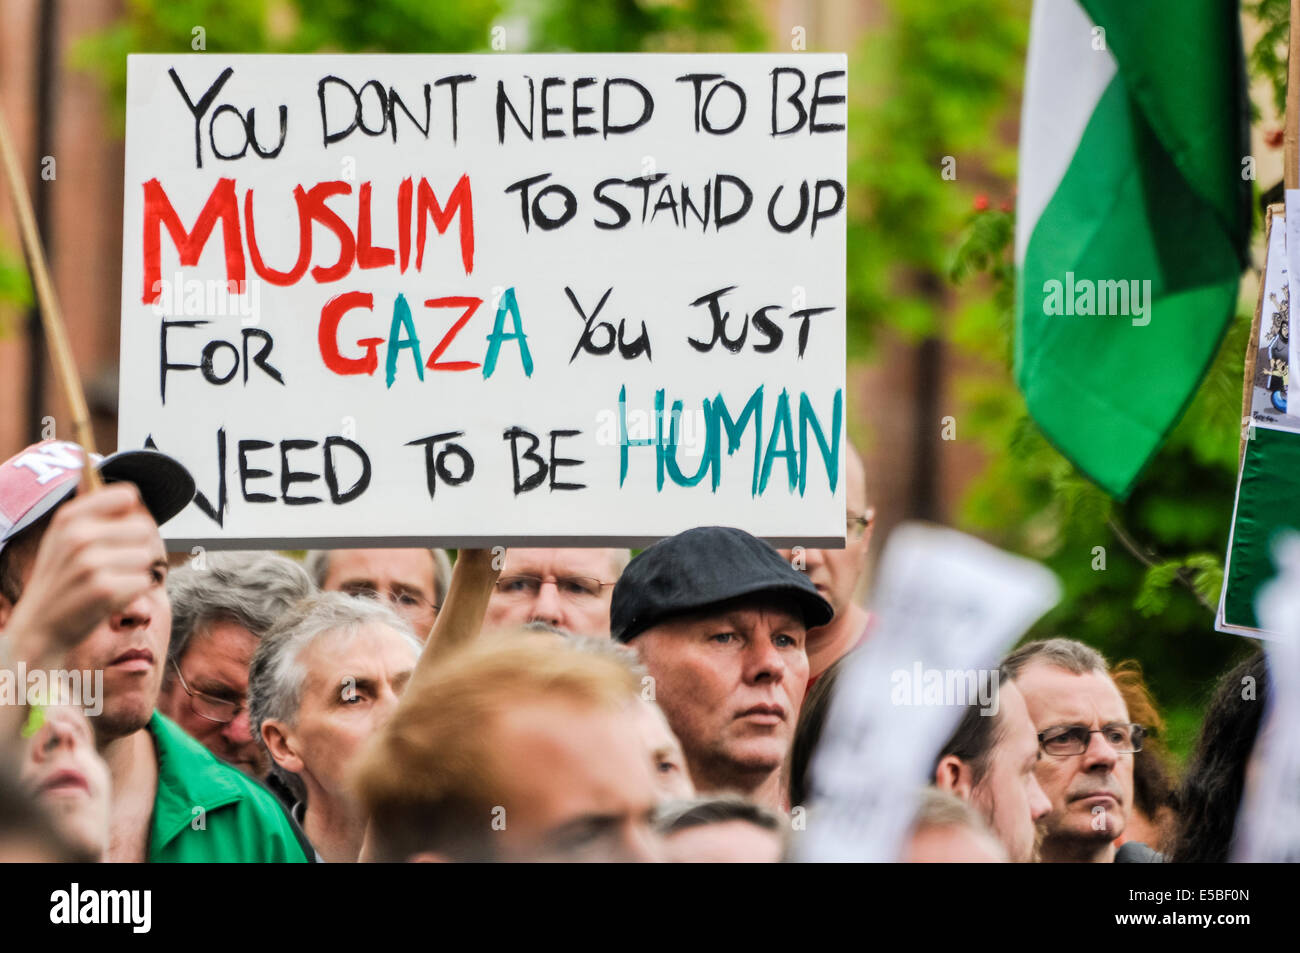 Belfast, Irlanda del Norte. 26 Jul 2014 - Un manifestante sostiene un cartel que dice "no se necesita ser un musulmán a levantarse para Gaza. Usted necesidad justa de ser humano' en una mirada pro/anti-israelíes protestan el crédito: Stephen Barnes/Alamy Live News Foto de stock